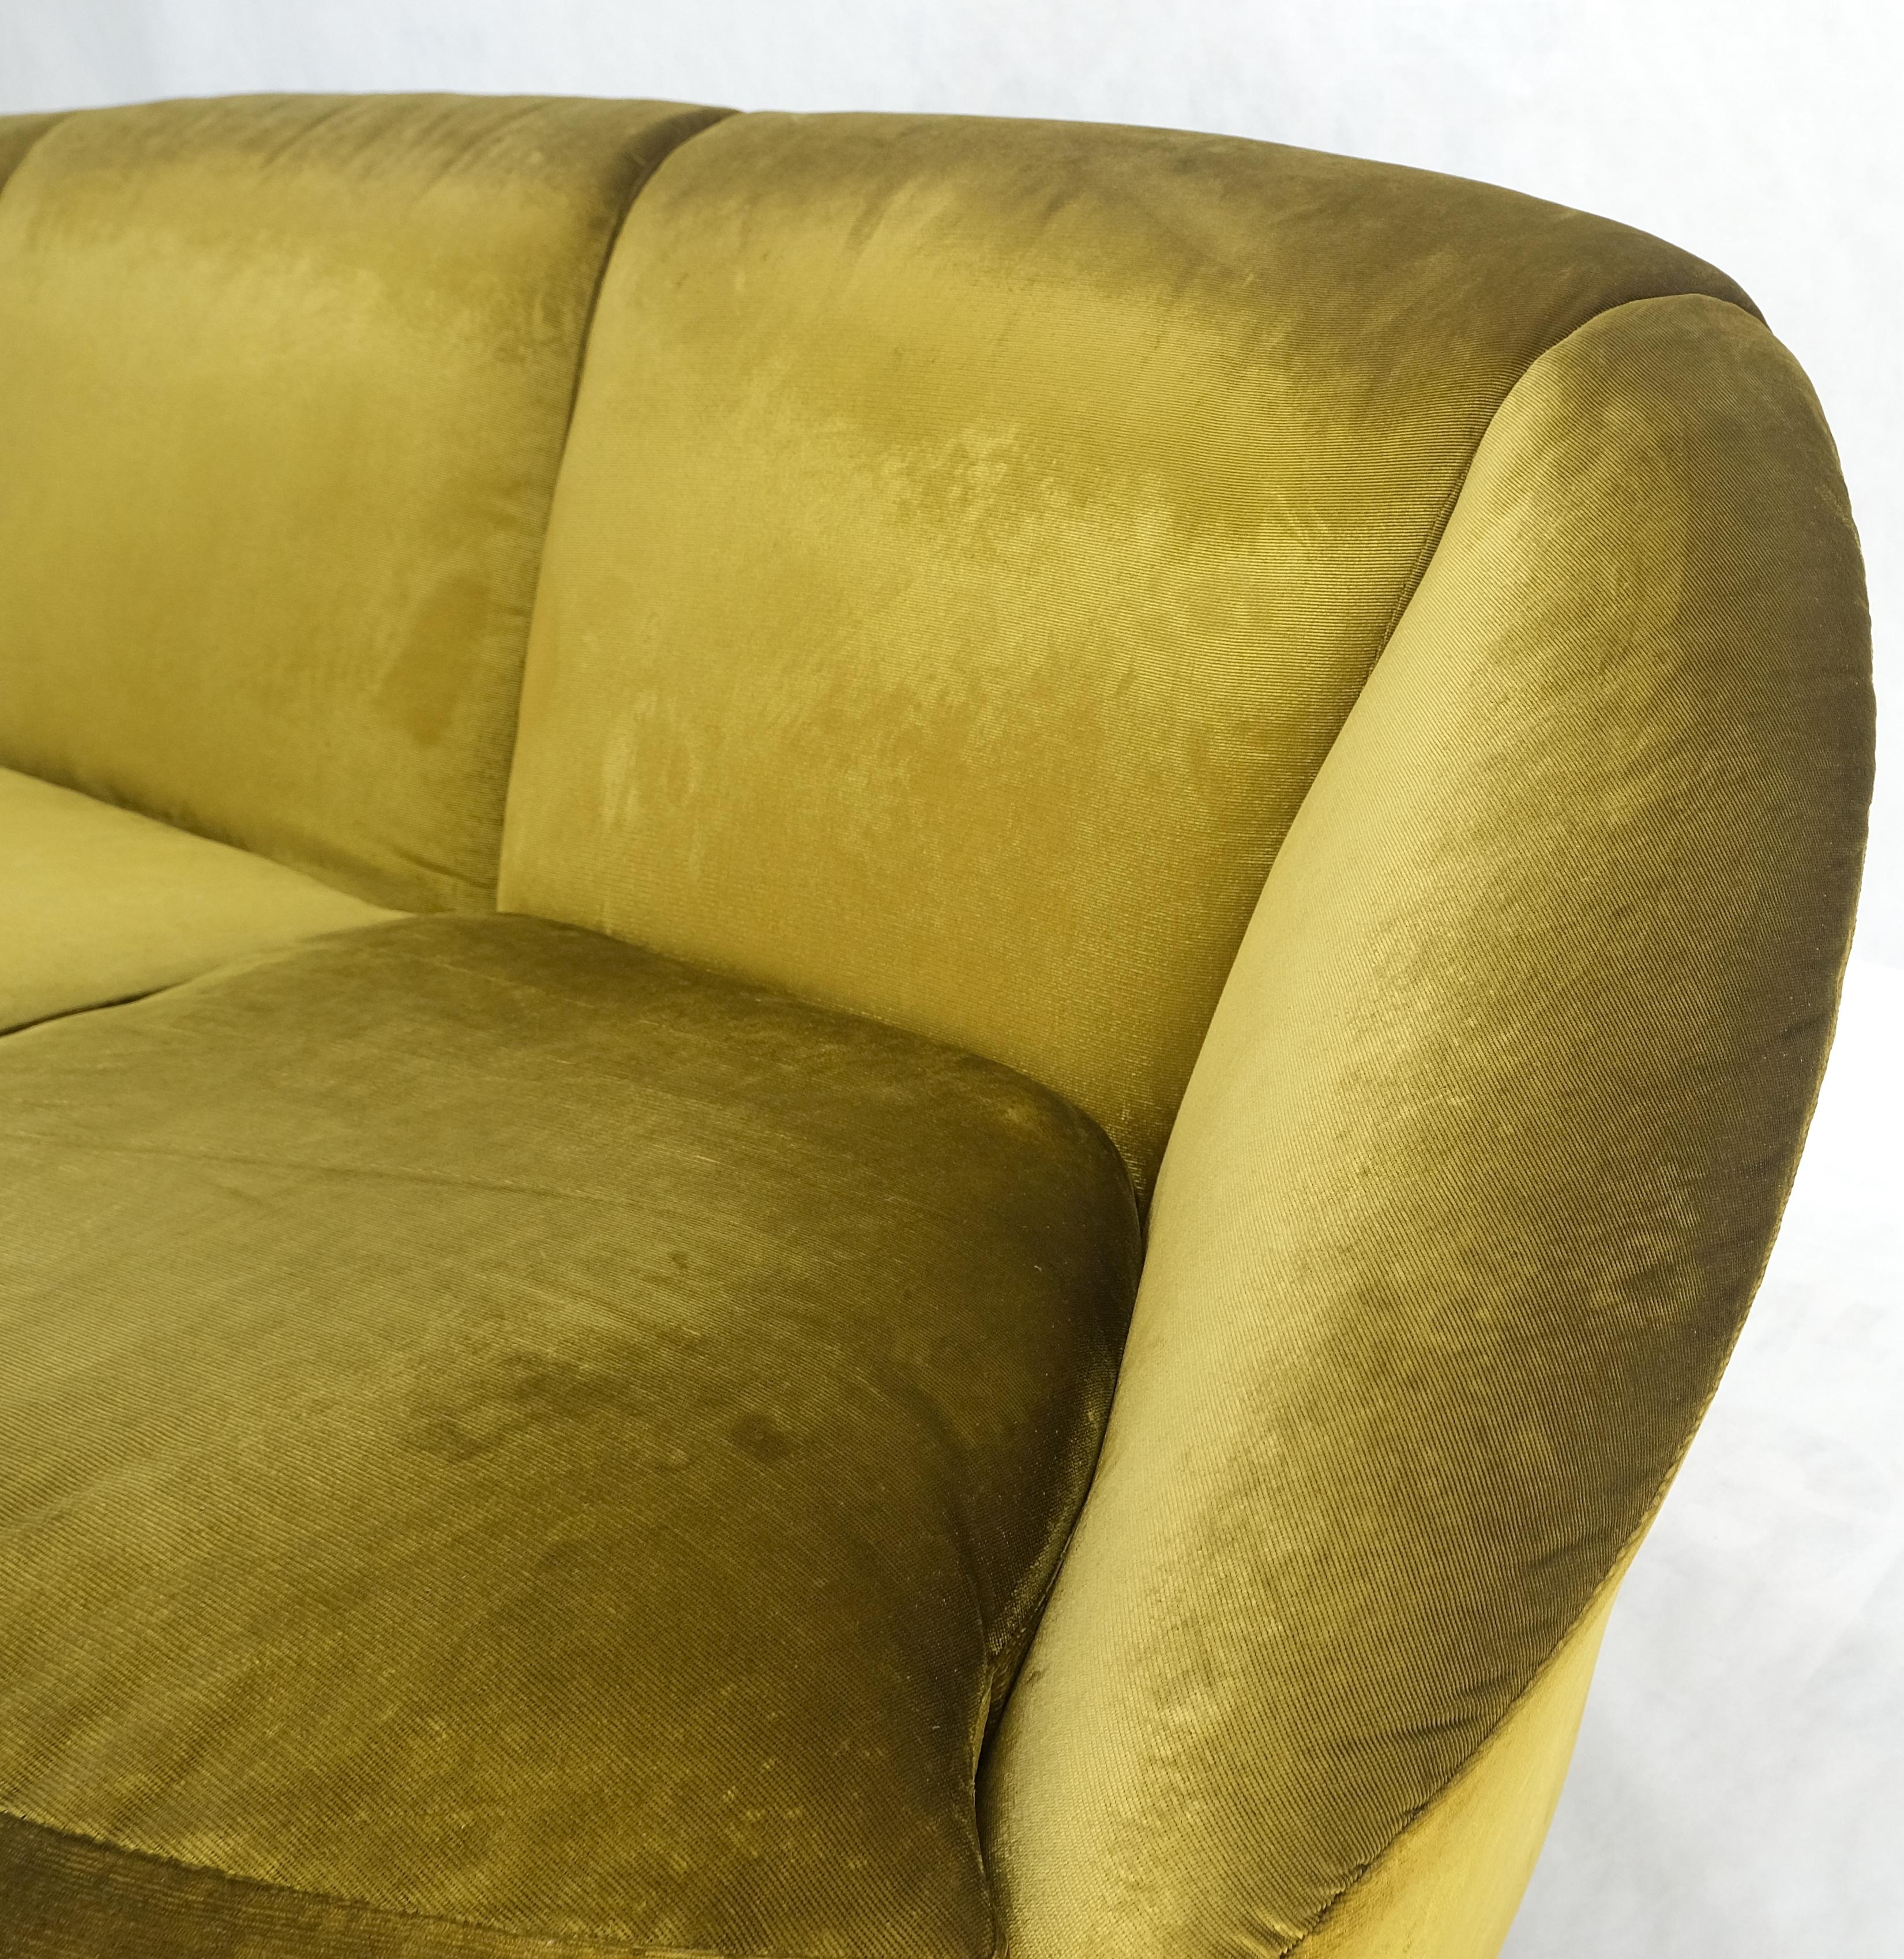 Canapé en forme de nuage, tapissé de velours doré, pieds en laiton coulé, italien, moderne du MId siècle MINT !